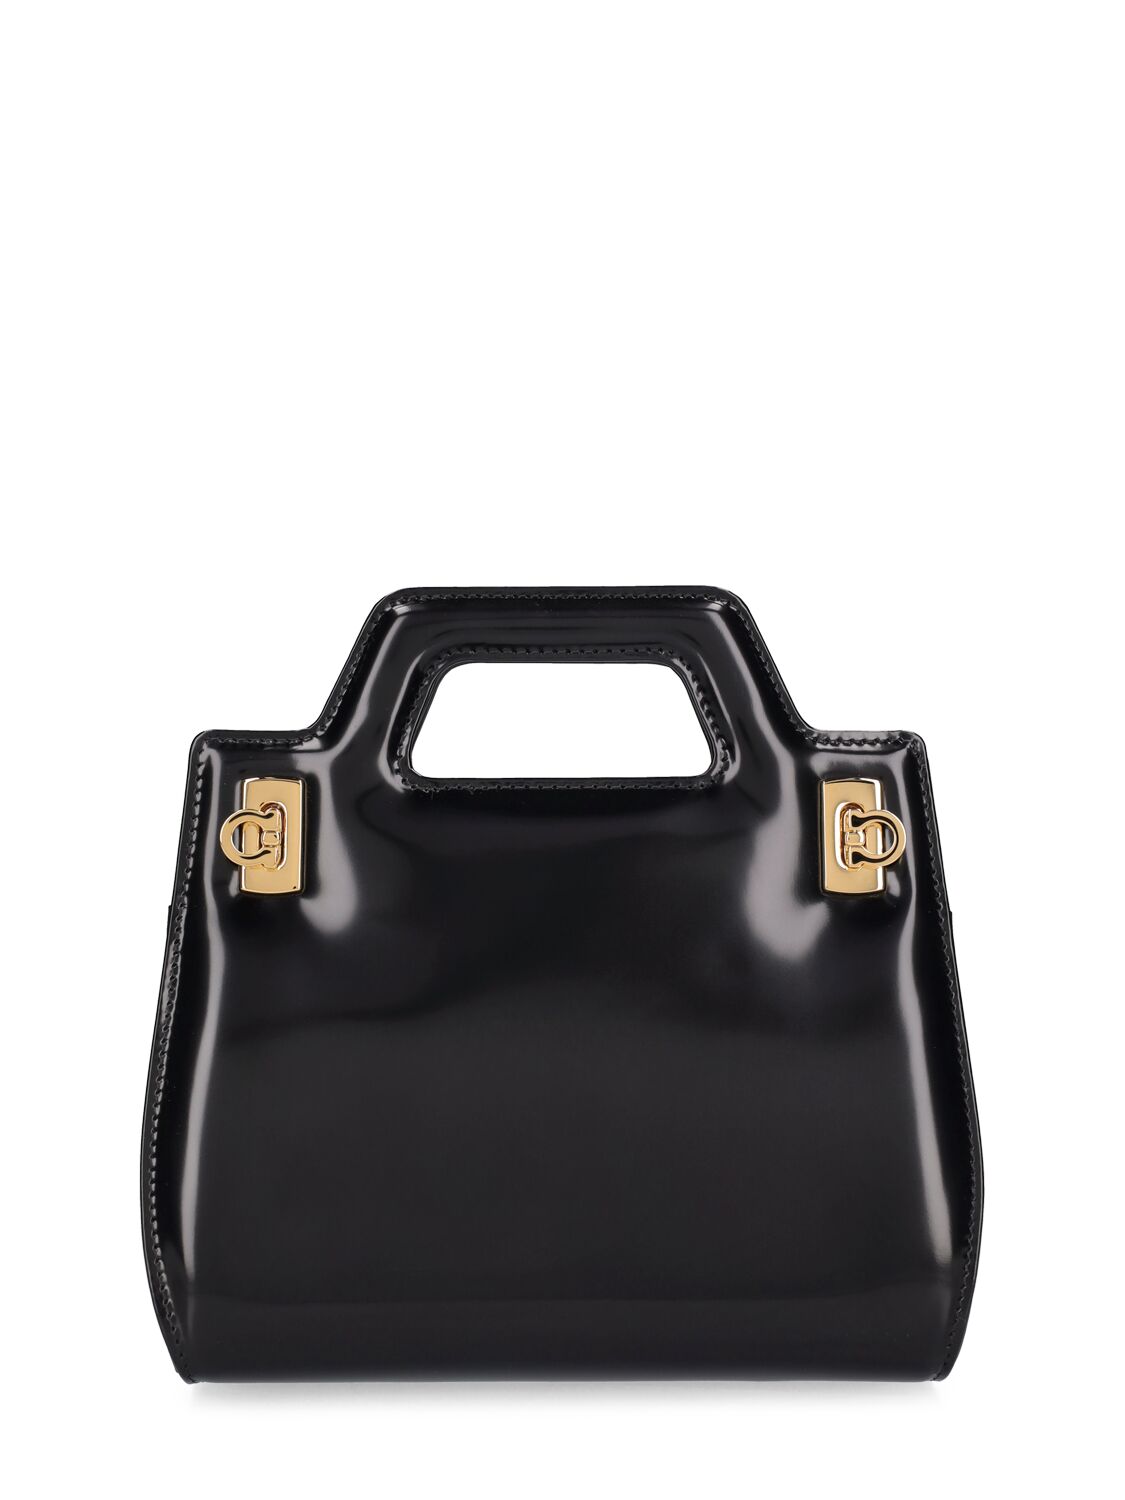 Image of Mini Wanda Leather Top Handle Bag